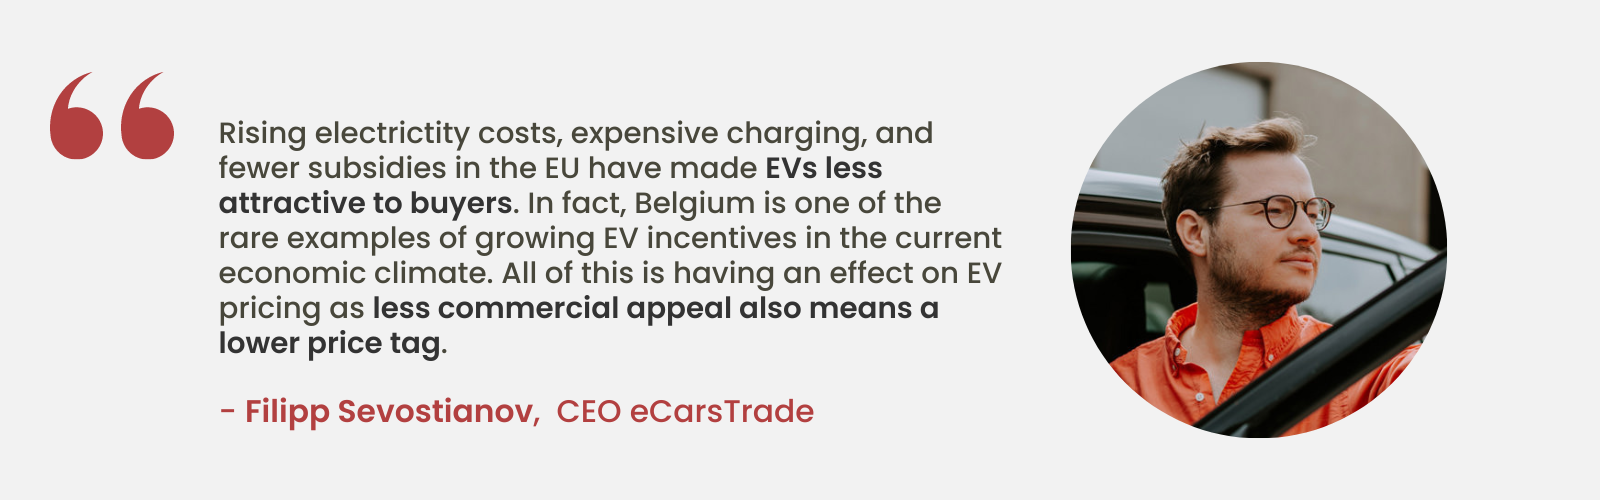 Deskundig inzicht van Filipp Sevostianov, CEO van eCarsTrade, over de afnemende aantrekkingskracht van elektrische voertuigen als gevolg van stijgende kosten en minder subsidies in de EU, wat de unieke positie van België met groeiende EV-prikkels benadrukt.